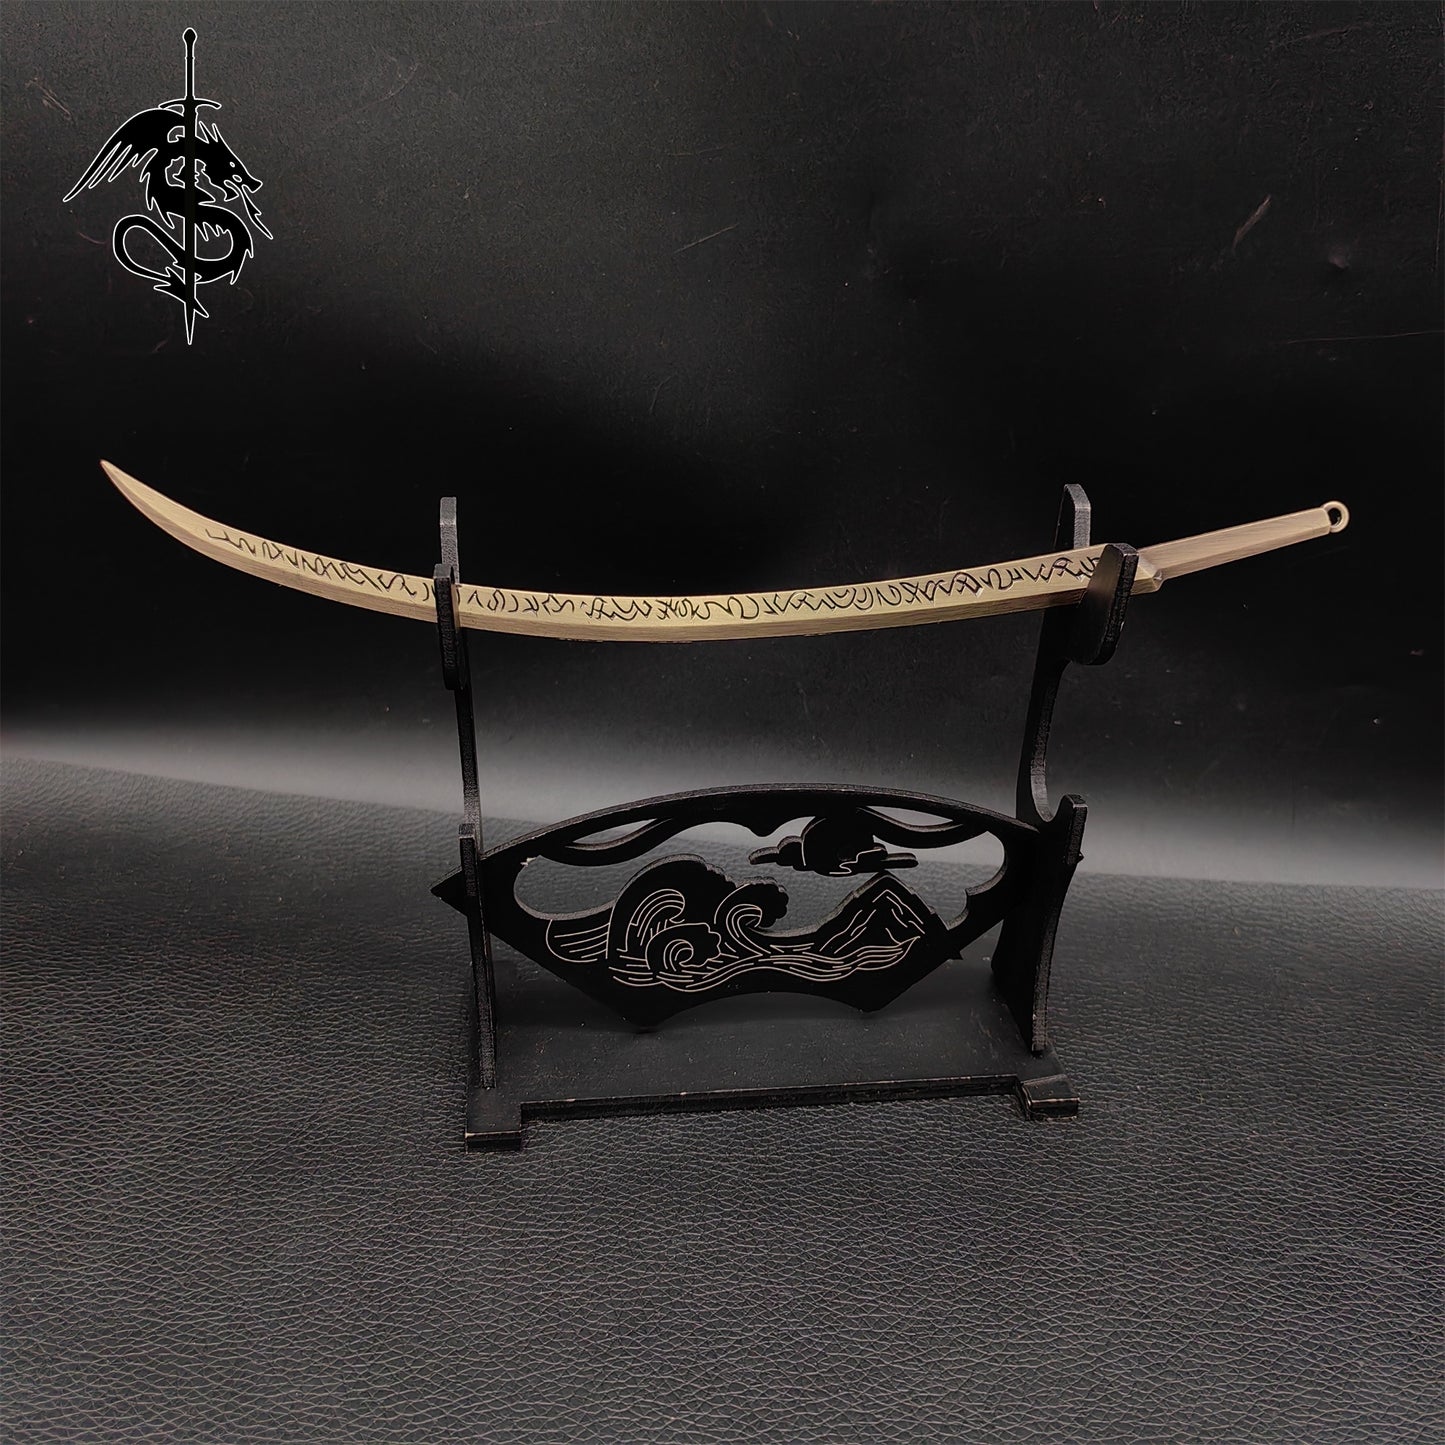 Elden Ring Swords Weapons Metal Miniature